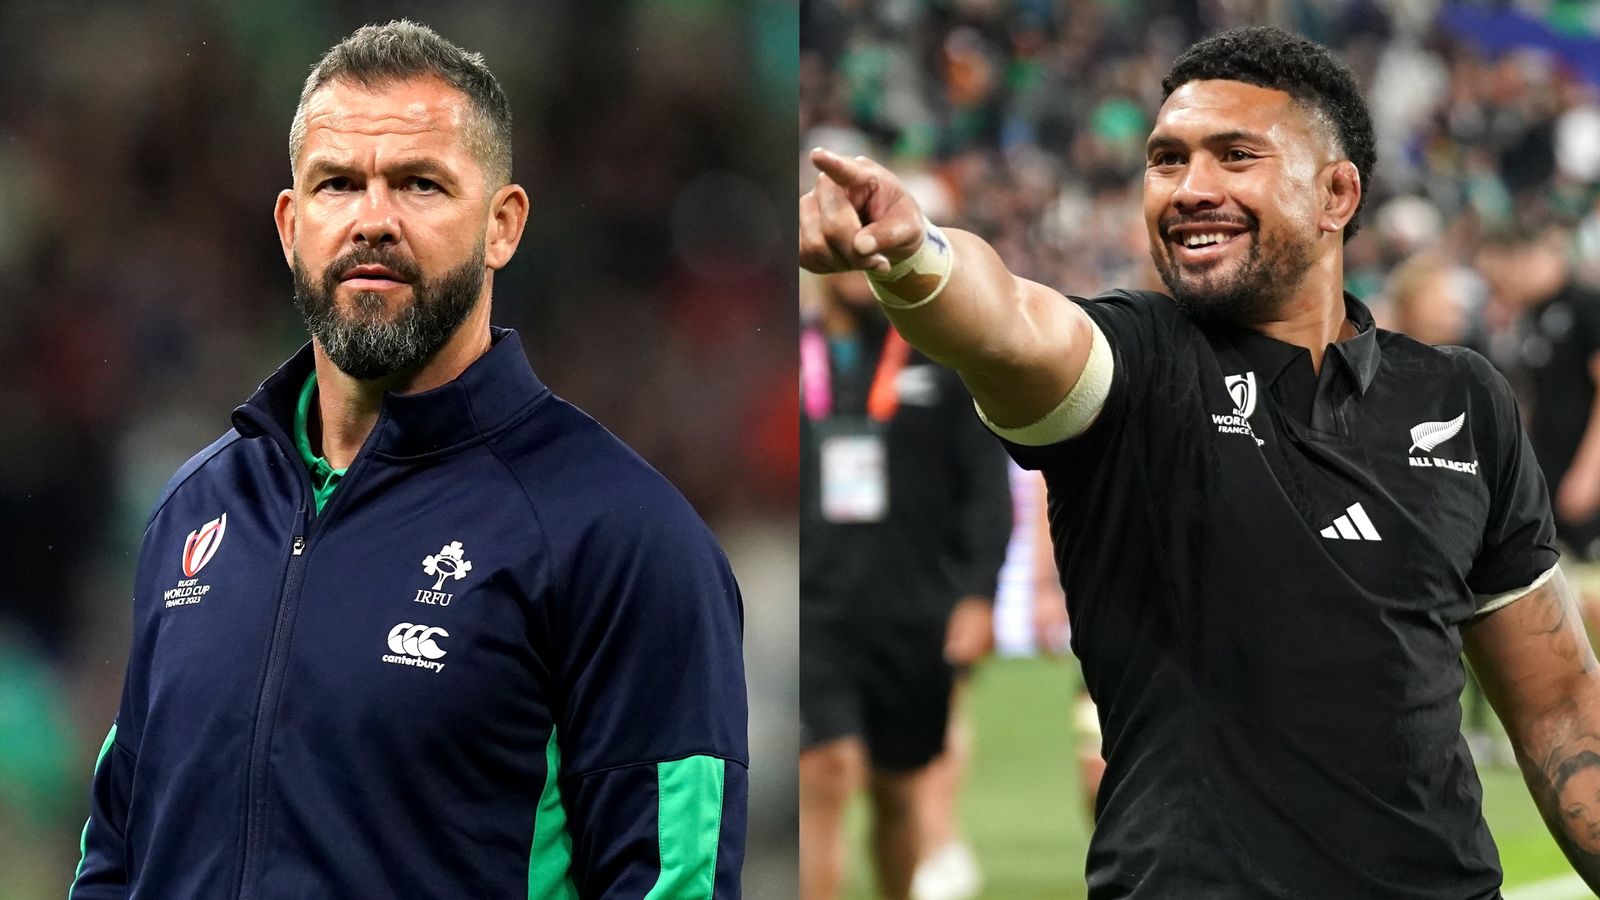 El irlandés Andy Farrell fue nombrado Entrenador Mundial del Año y el neozelandés Ardie Savea fue nombrado Jugador del Año |  Sólo un jugador sudafricano en el equipo del año |  Noticias de la Unión de Rugby